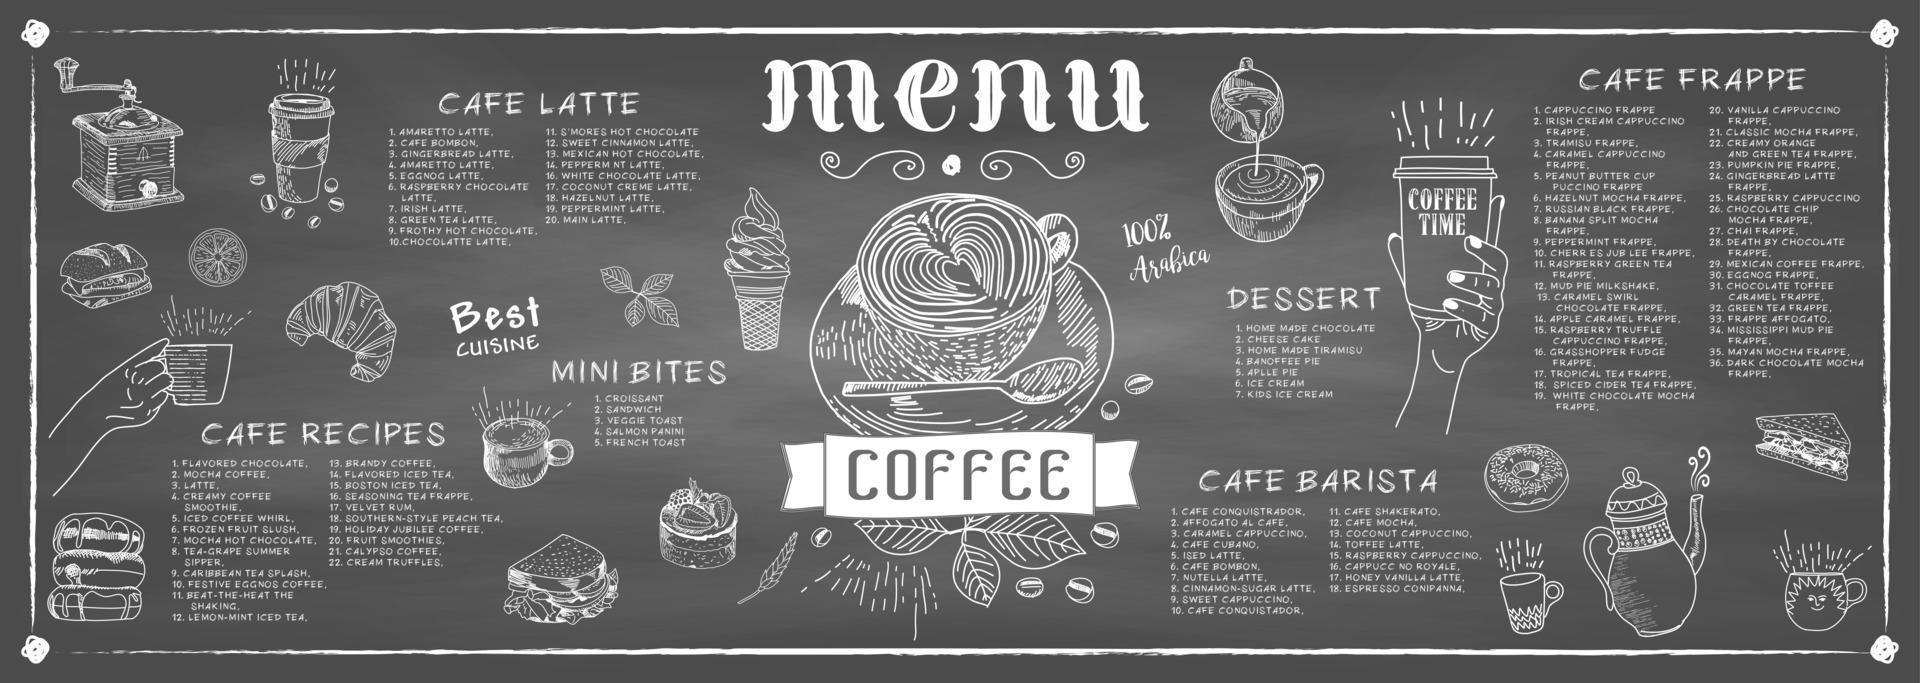 kaffehusmeny. restaurang café meny. vektor